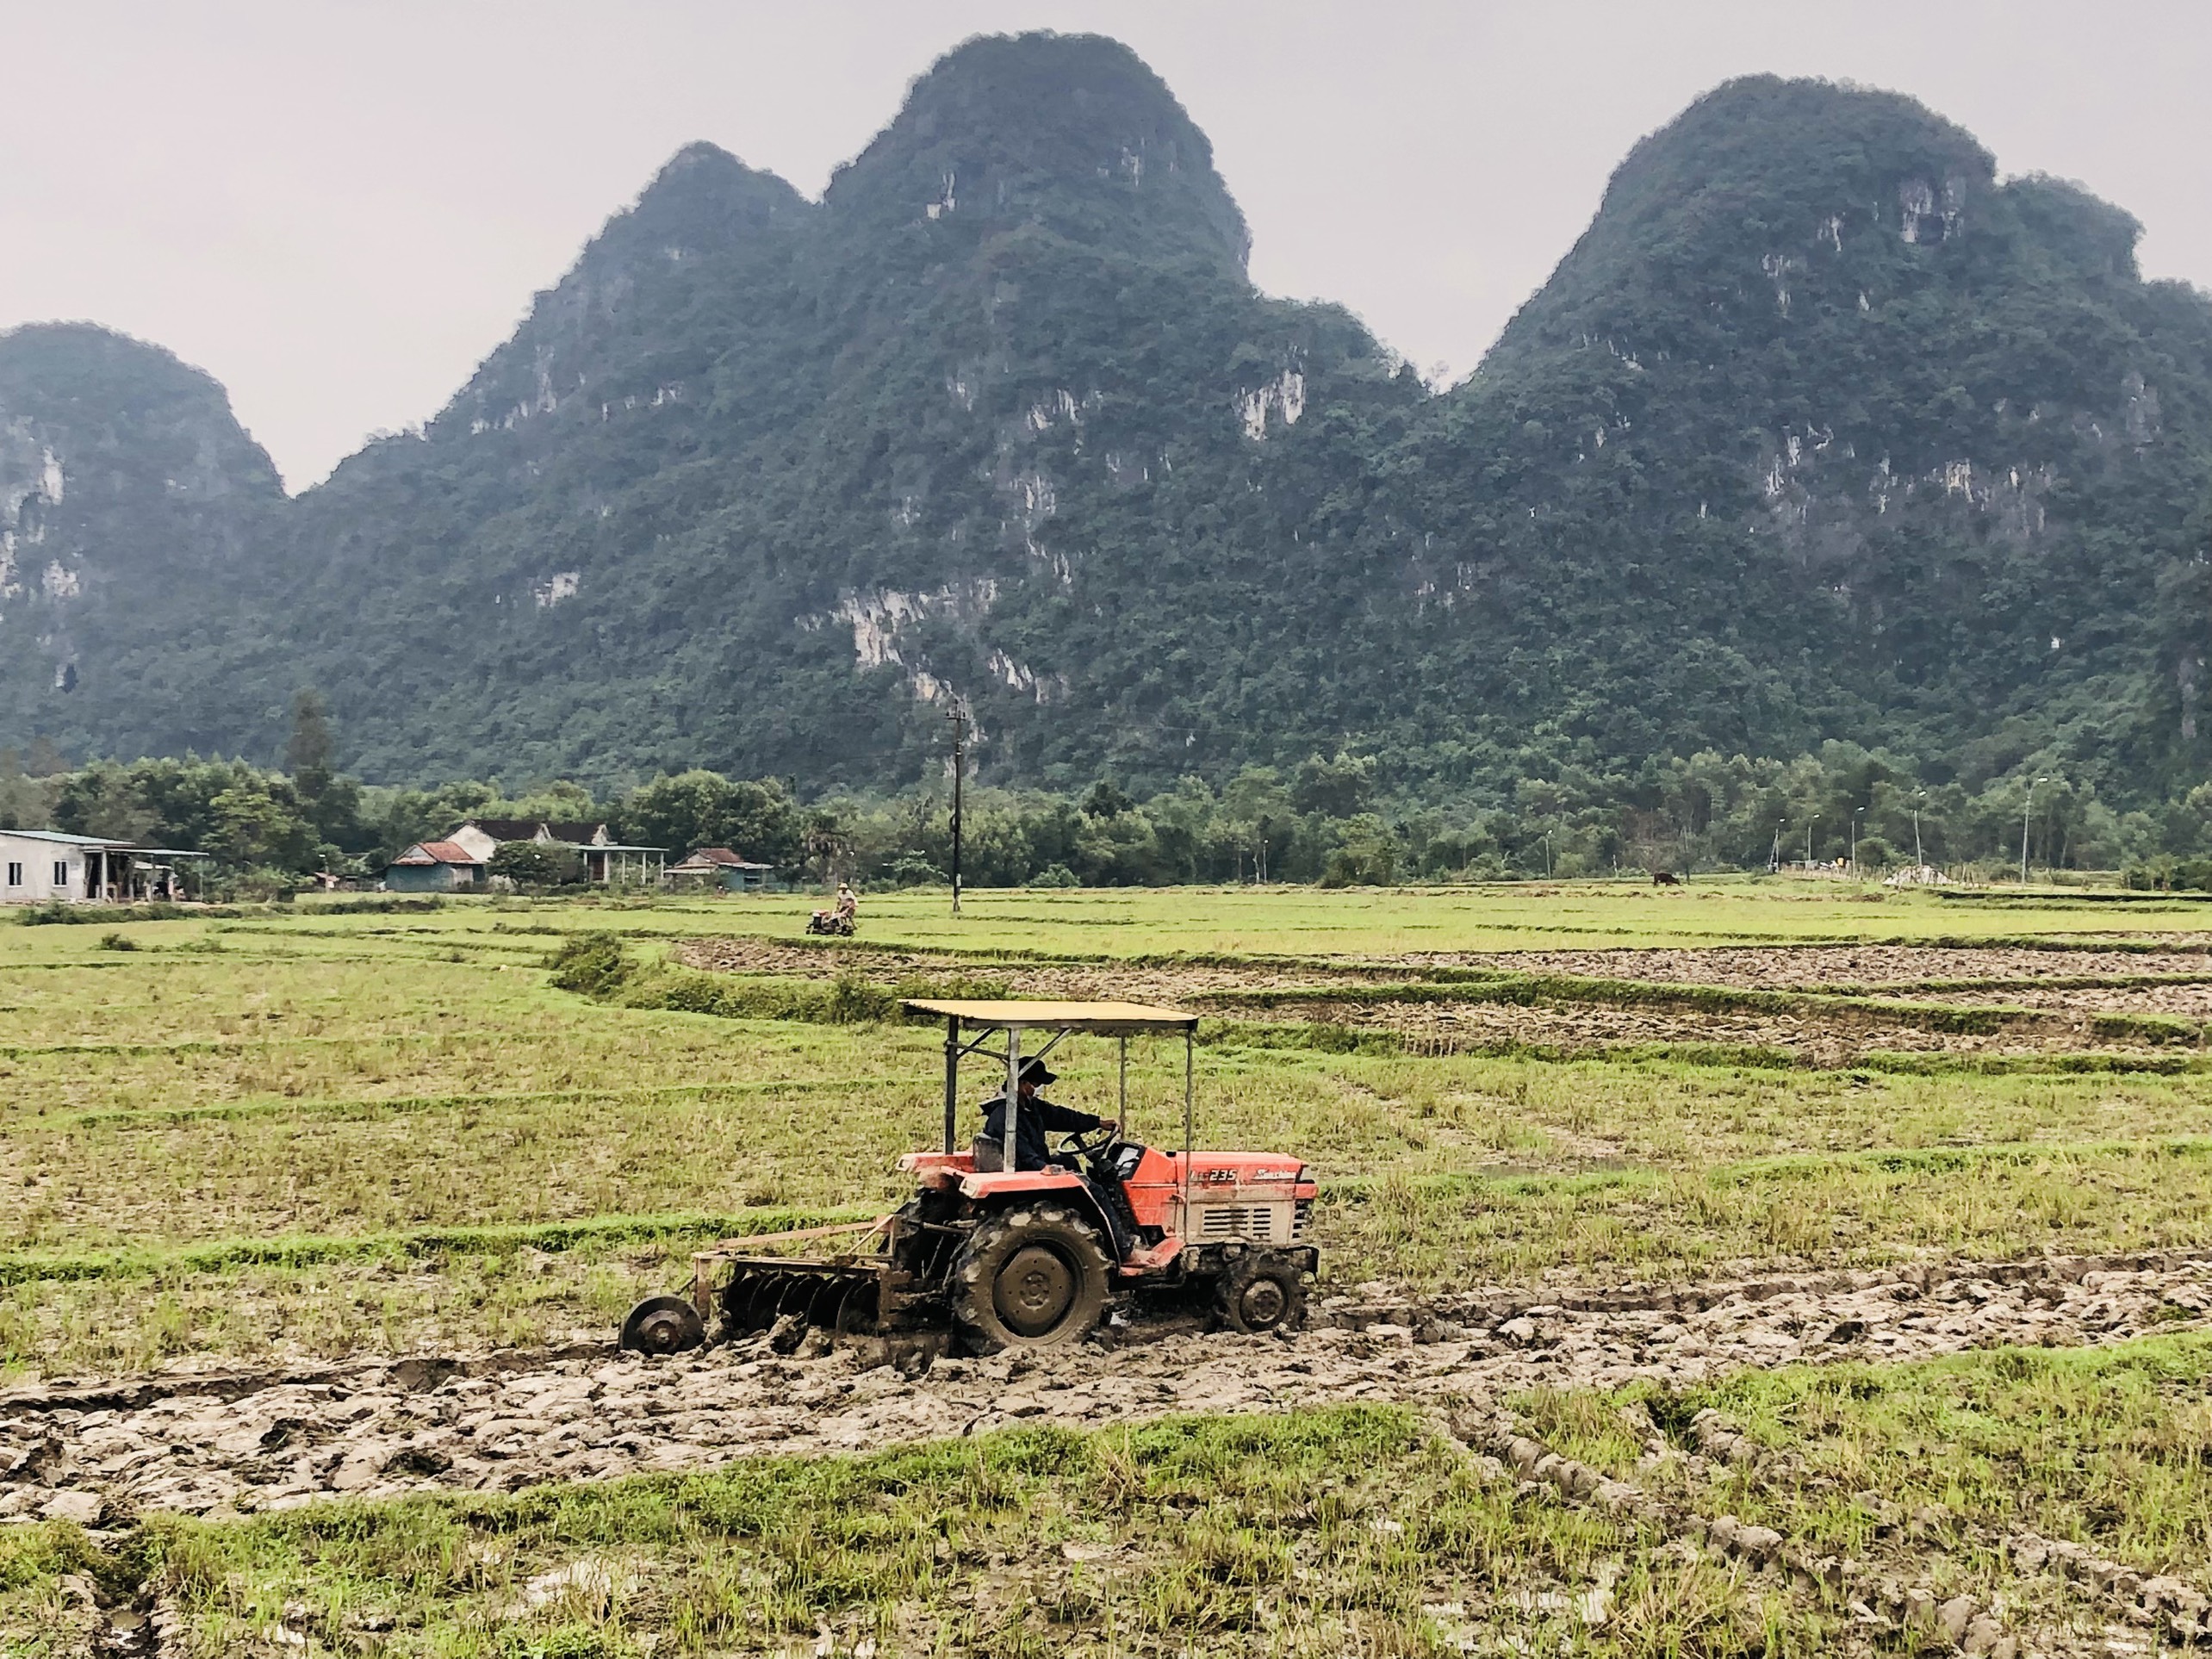 Nông dân Minh Hóa cày ải, chuẩn bị chu đáo cho vụ sản xuất đông -xuân 2021-2022.